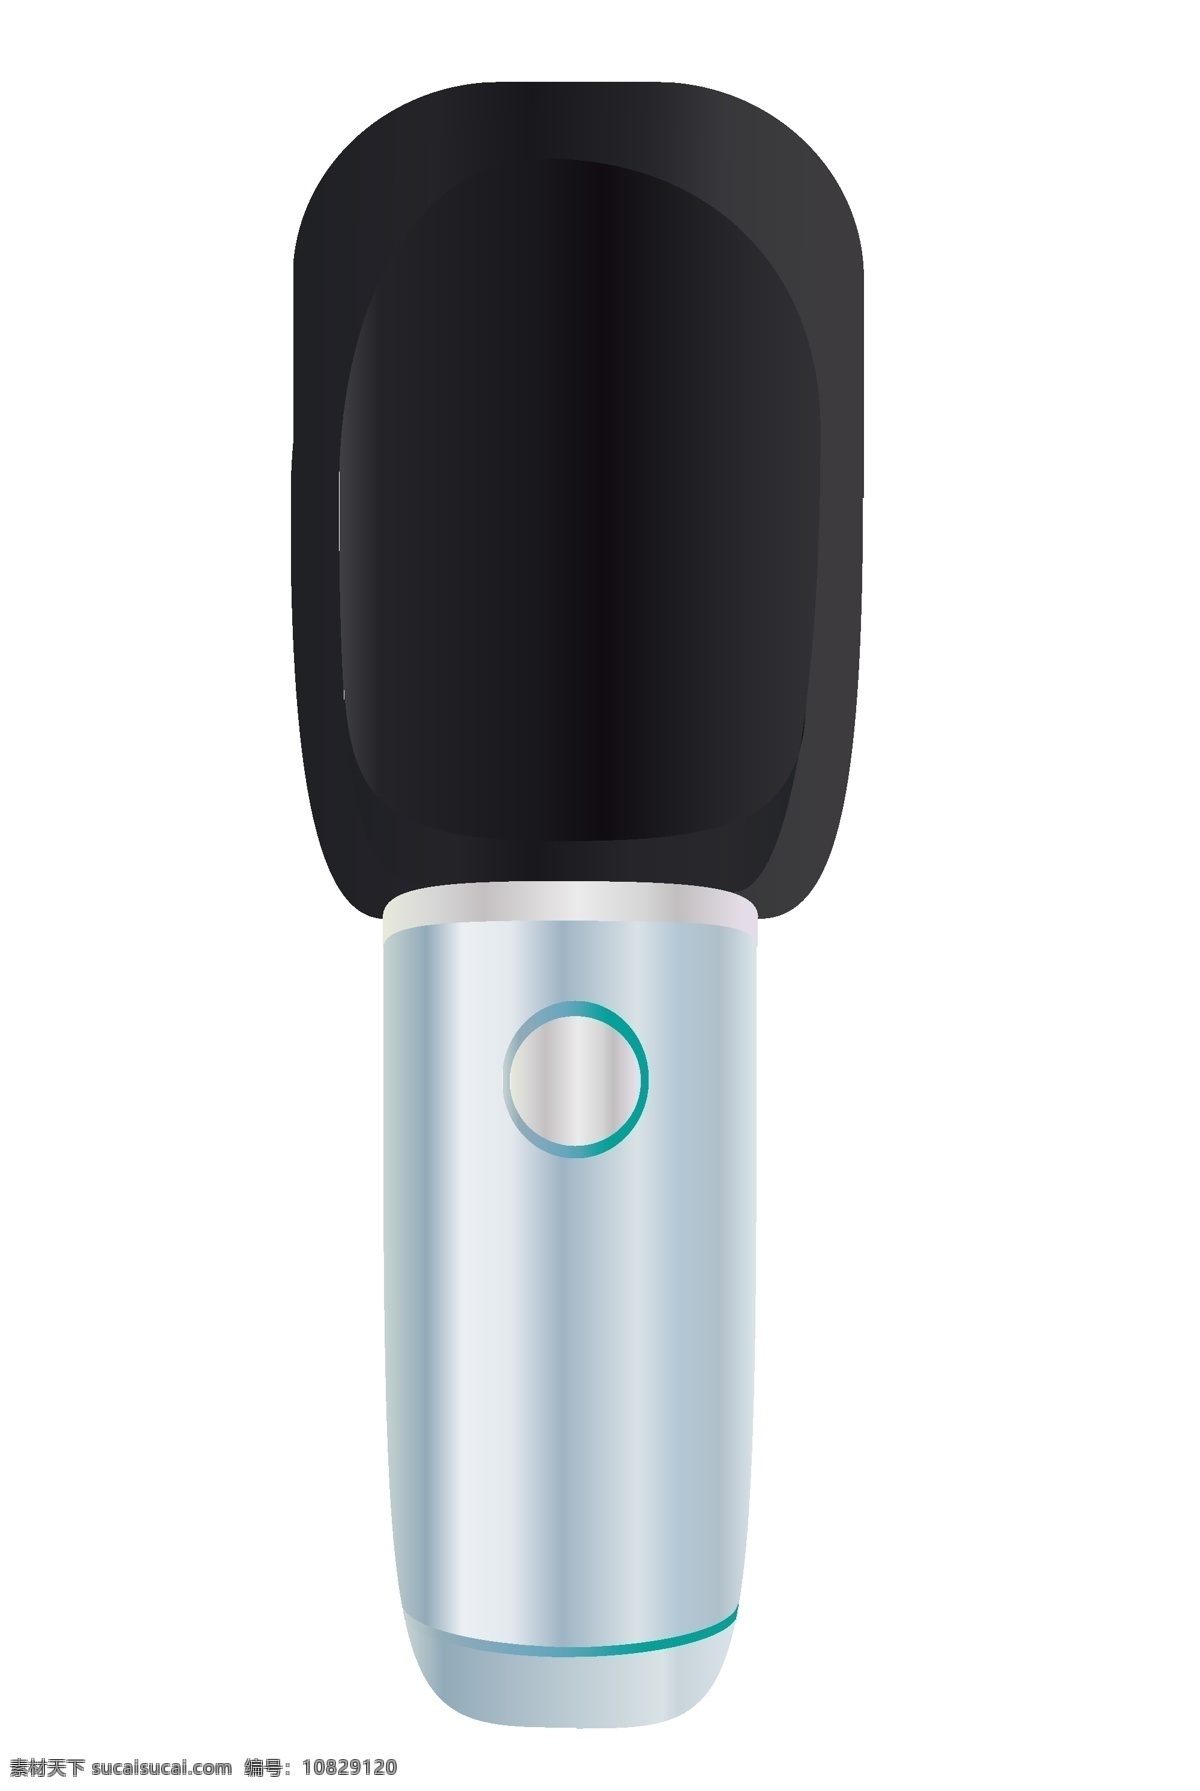 黑色 白色 话筒 插画 黑色的话筒 白色的手柄 播音主持工具 立体话筒插画 立起来的话筒 创意话筒插画